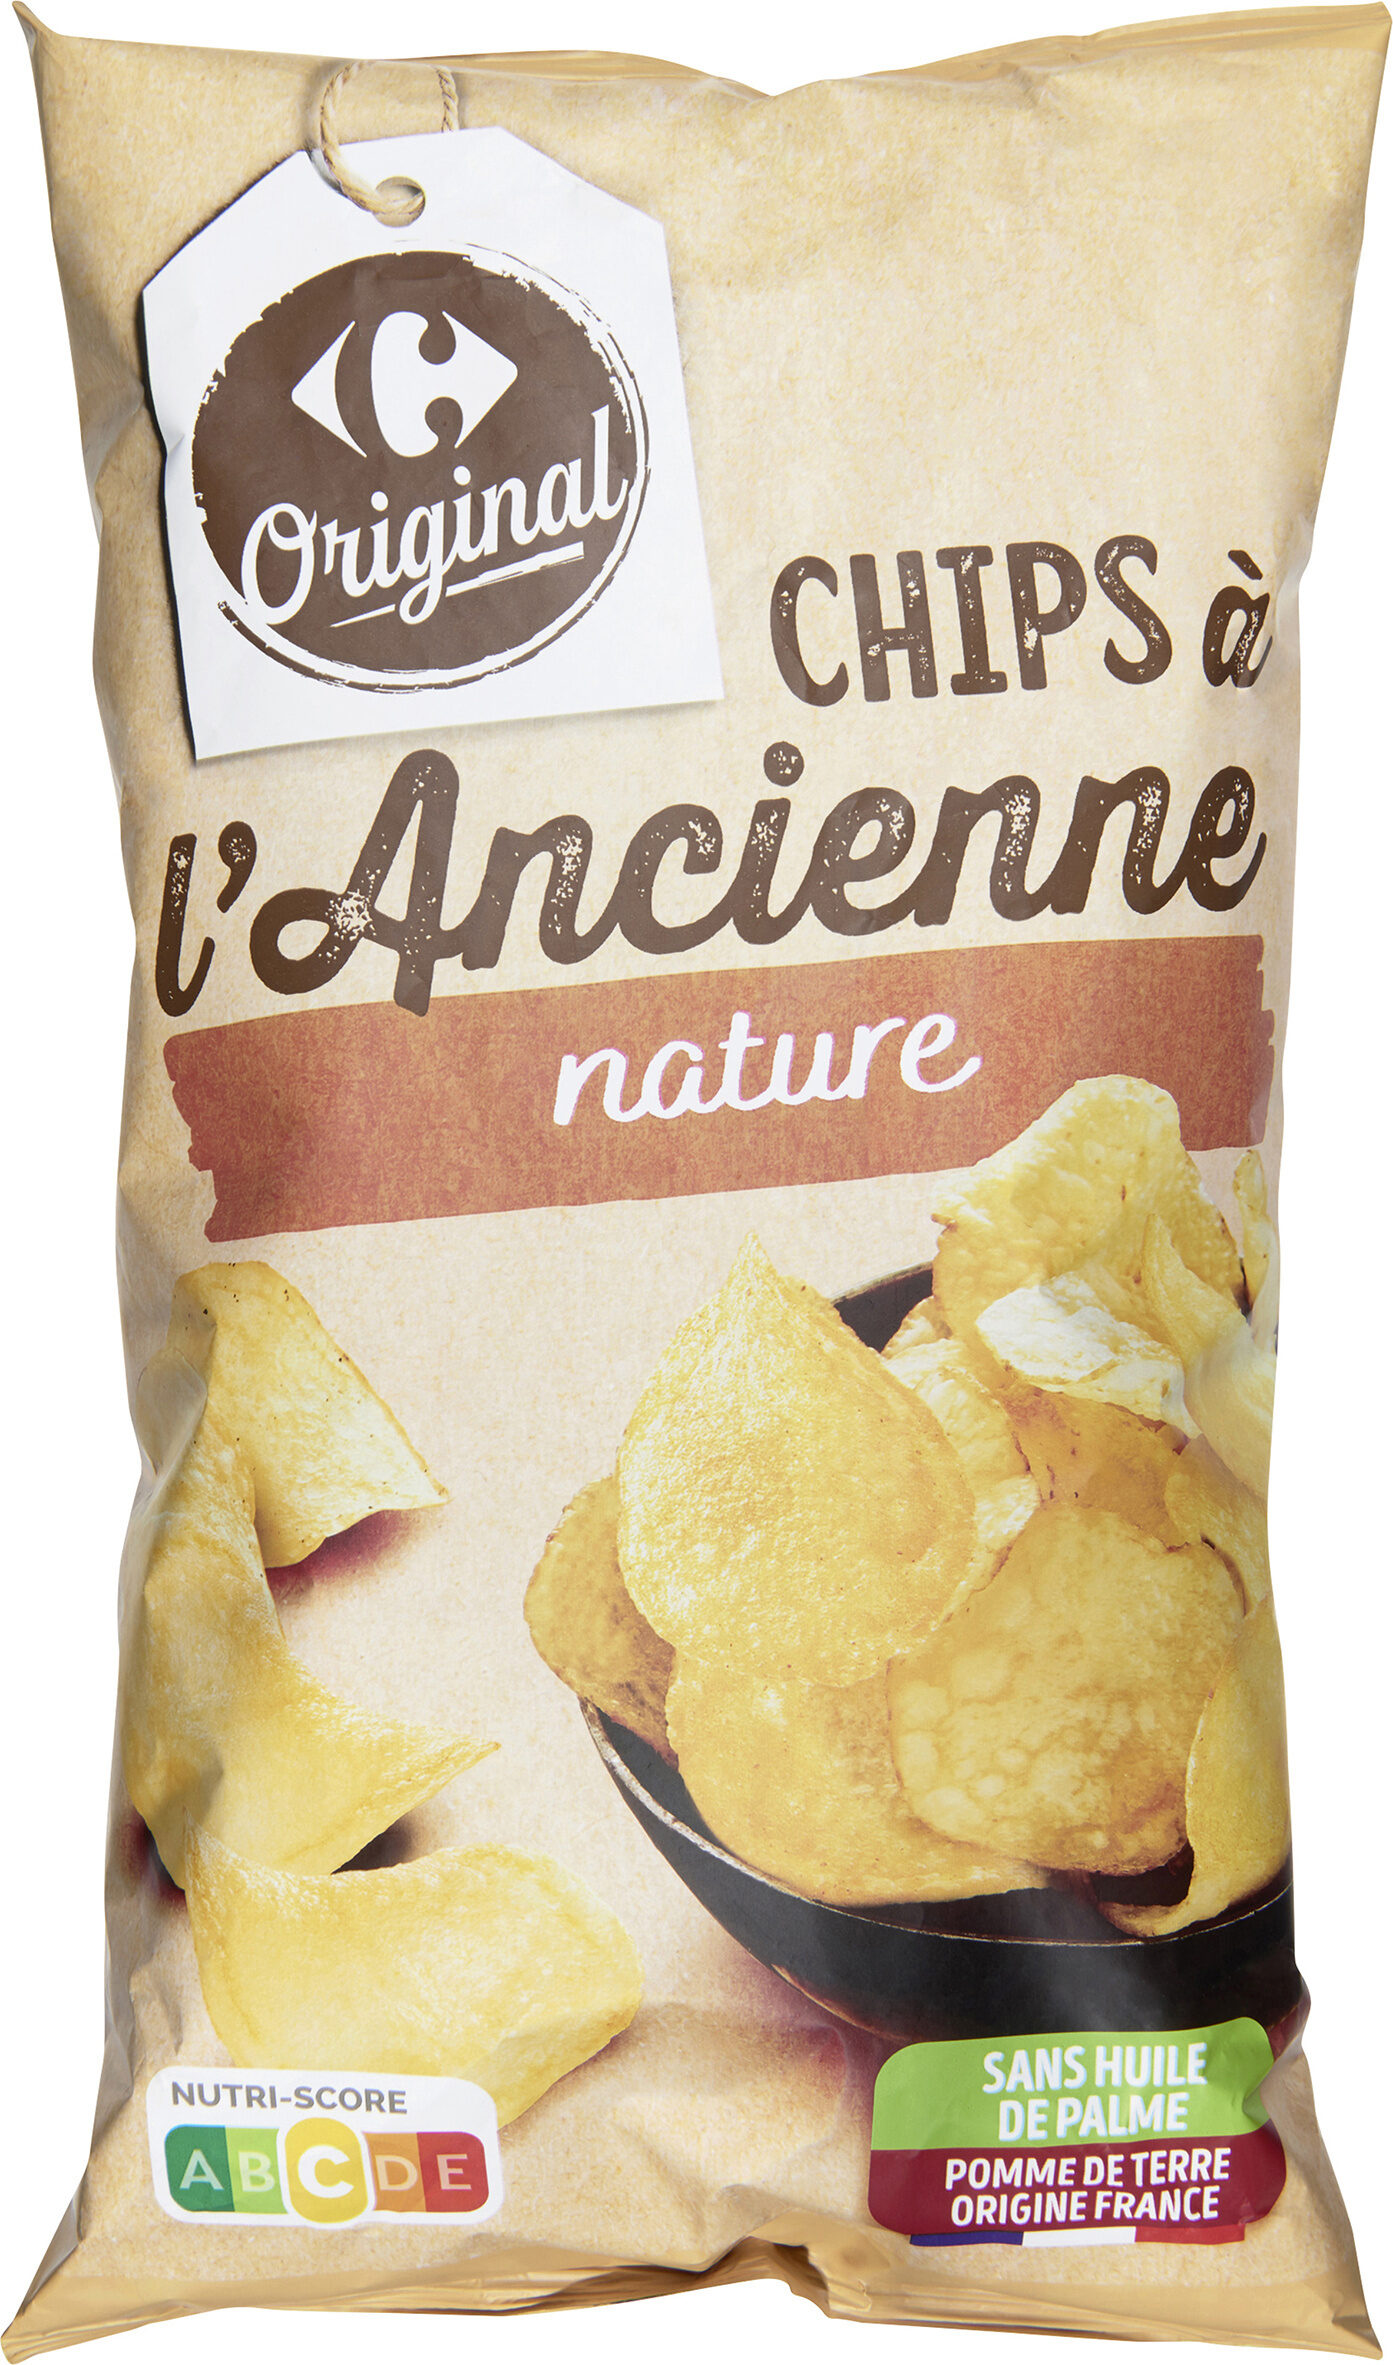 Chips, Recette à l'Ancienne - Product - fr